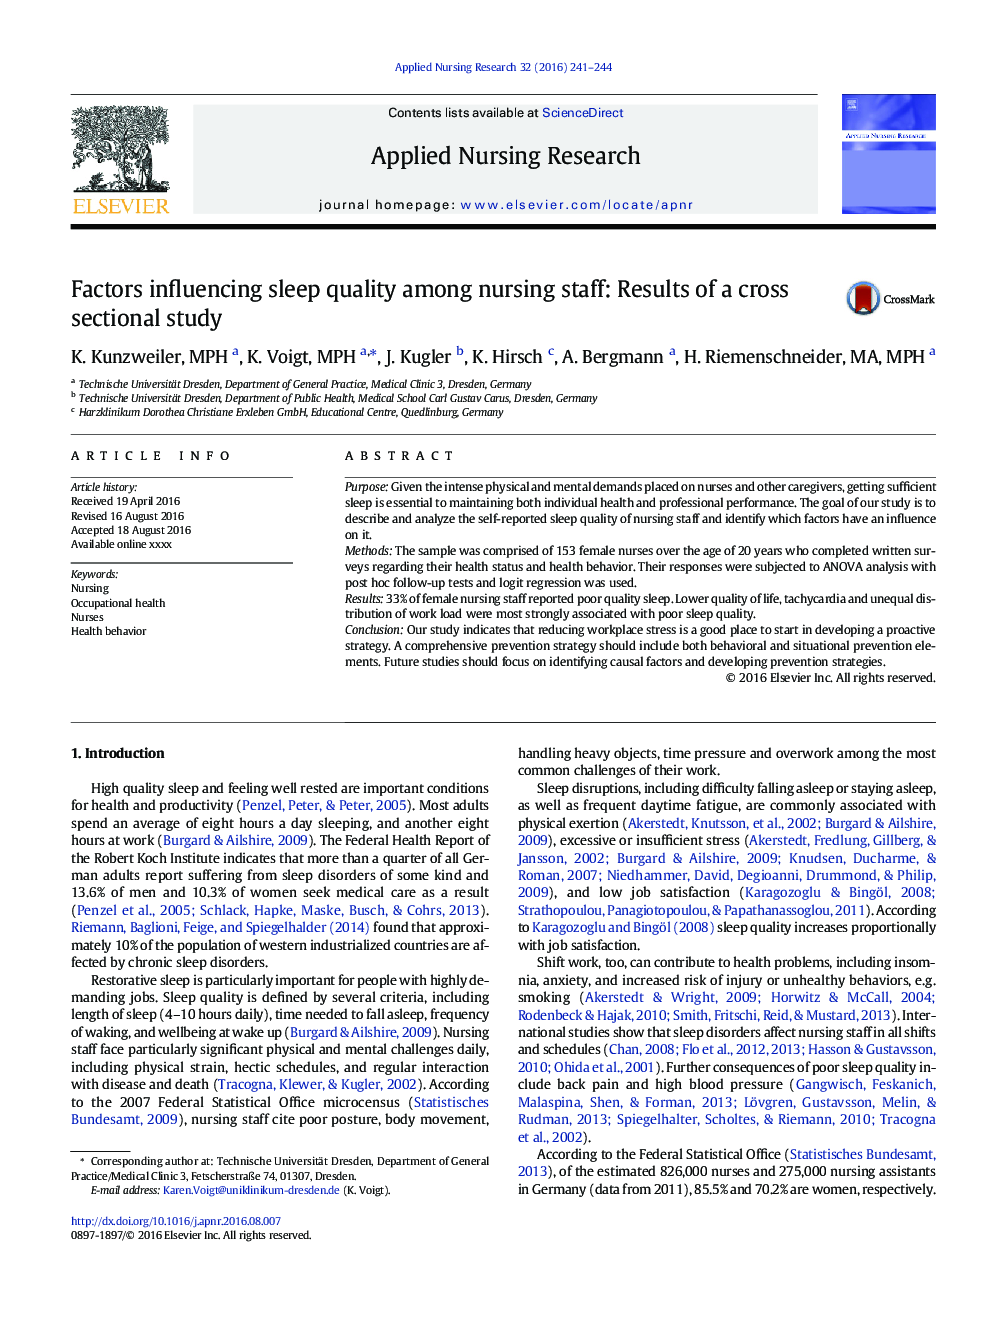 عوامل موثر بر کیفیت خواب در کارکنان پرستاری: نتایج یک مطالعه مقطعی